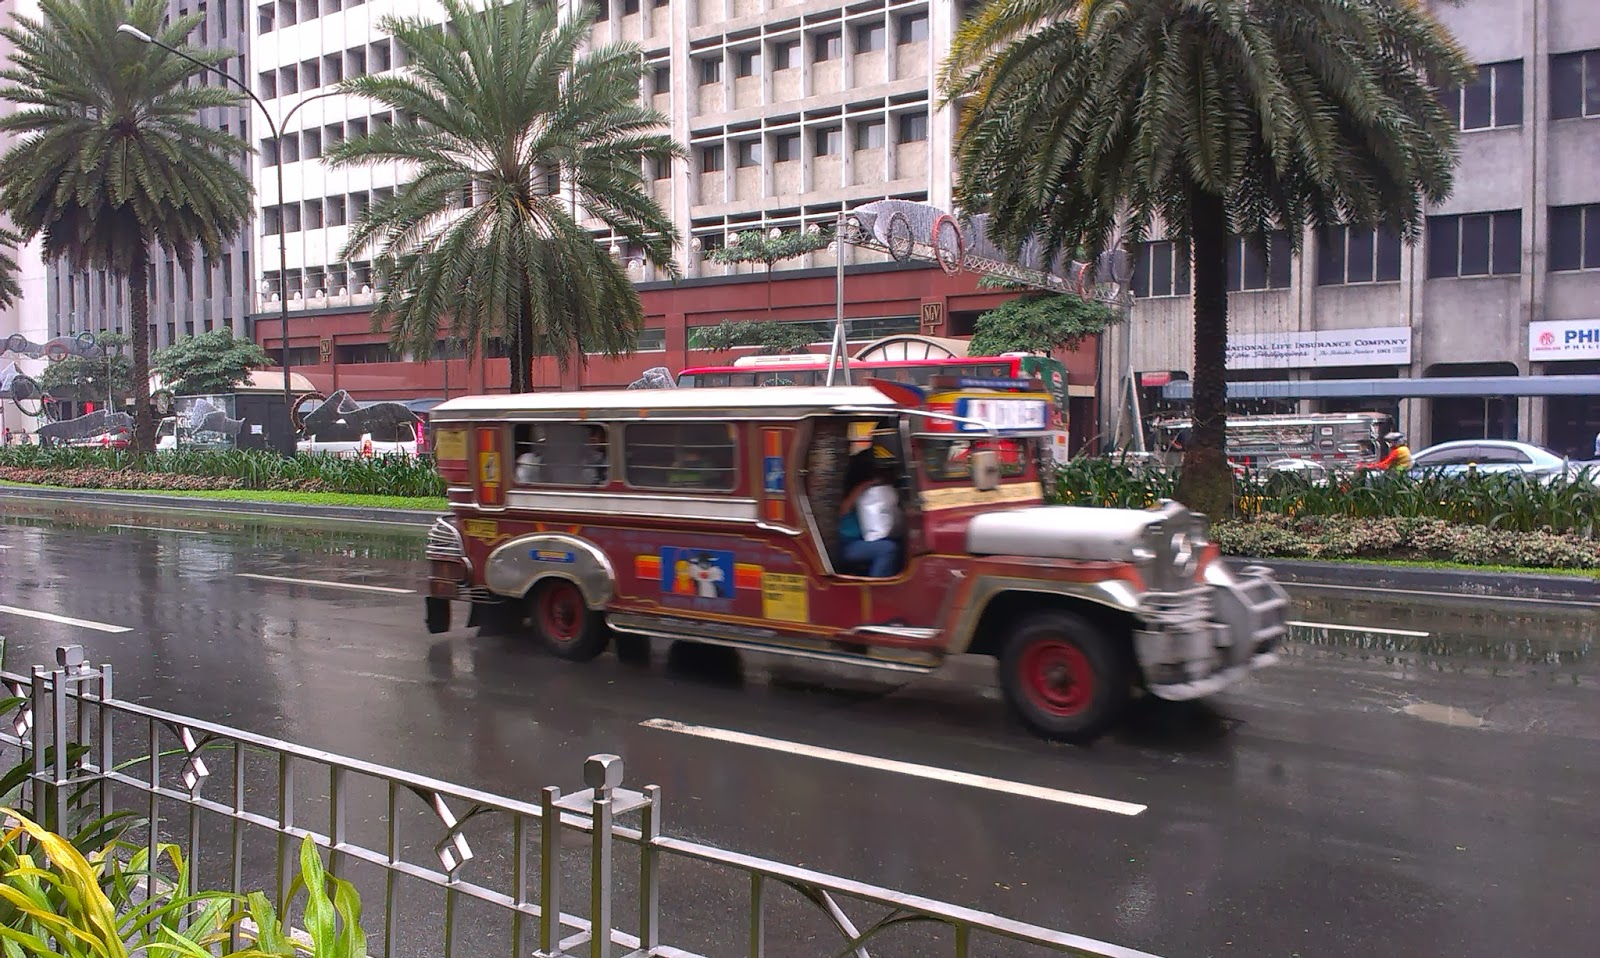 Jeepney, tradiční veřejná doprava na Filipínách (https://en.wikipedia.org/wiki/Jeepney)